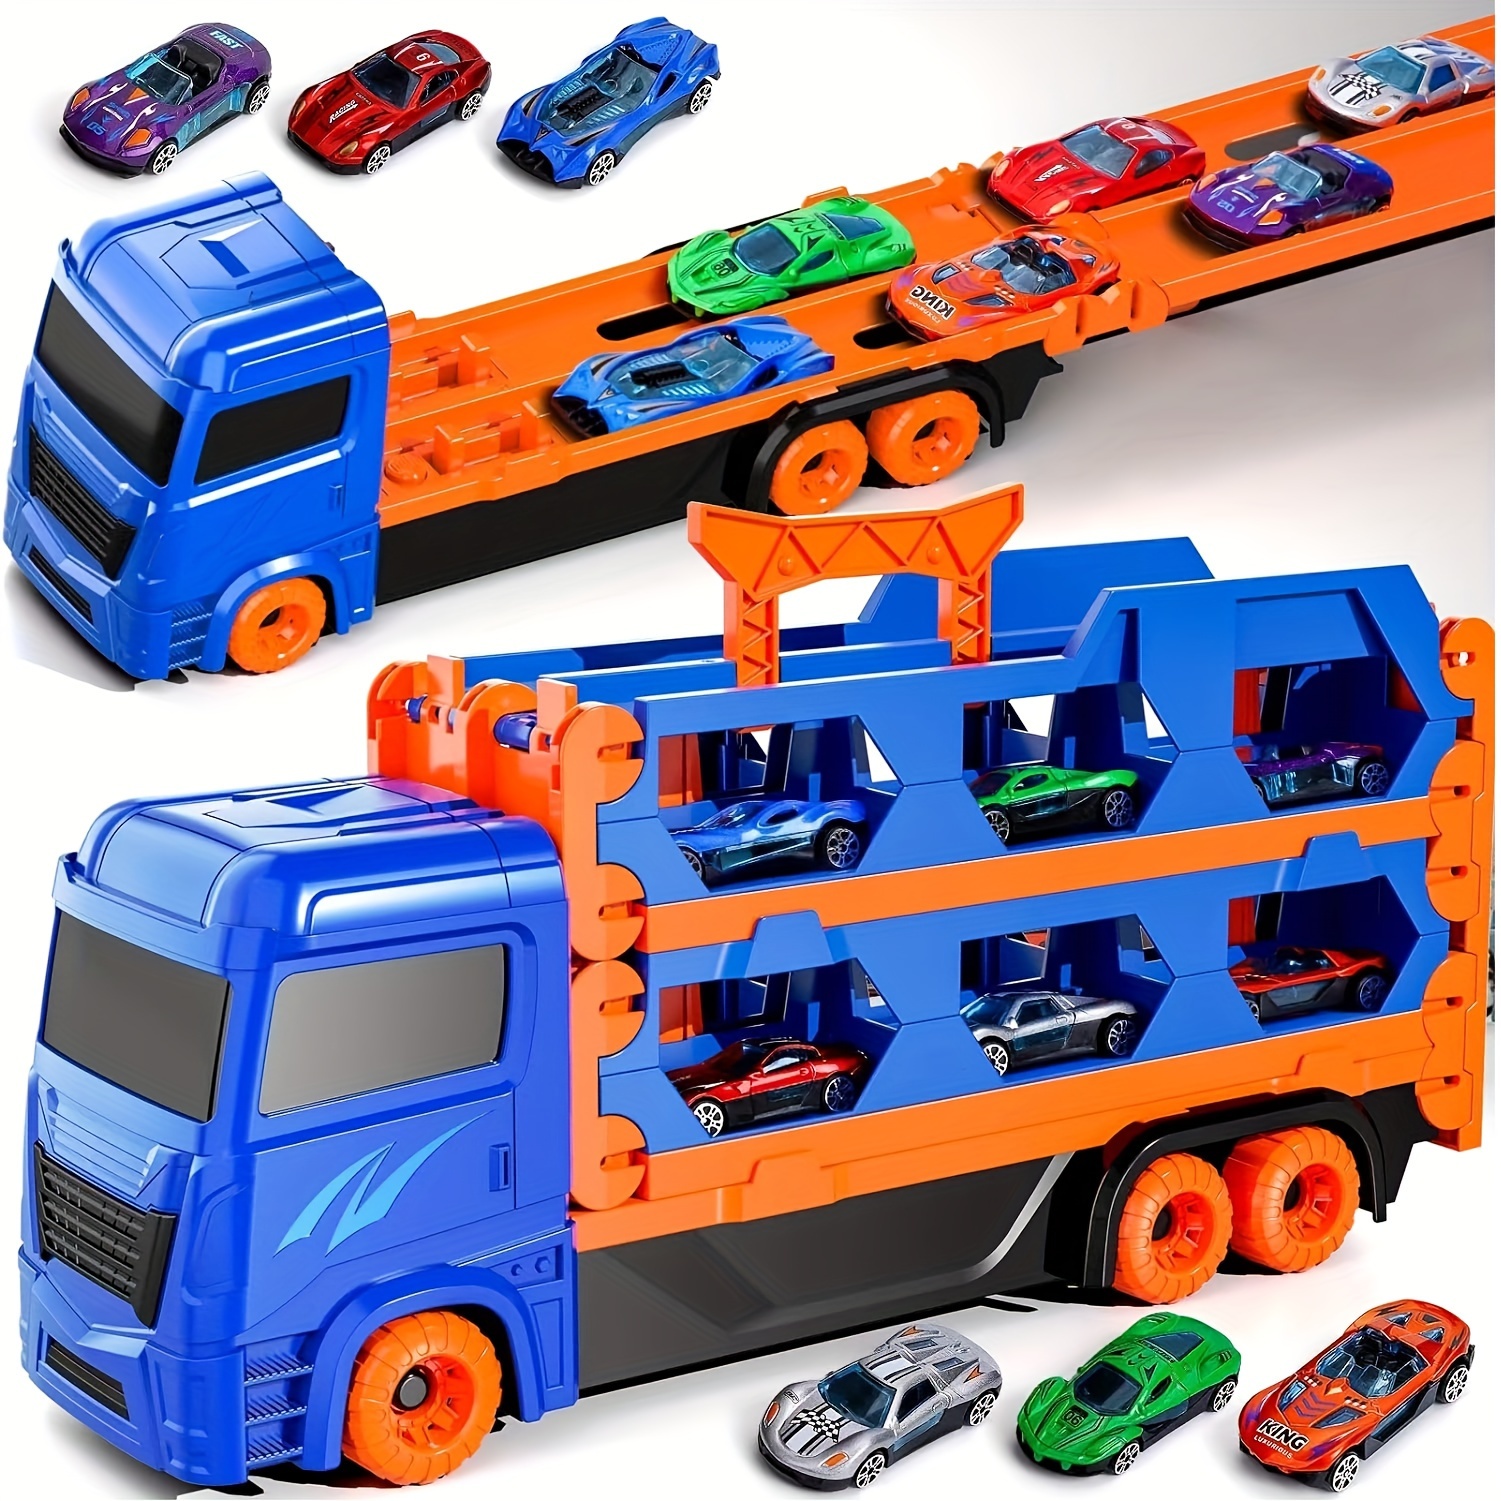  Juguetes de coche para bebés, autos de juguete para bebés,  juguetes de Pascua, camión de sonajero y rollo para niñas pequeñas,  camiones Push and Go para regalo de cumpleaños de 1